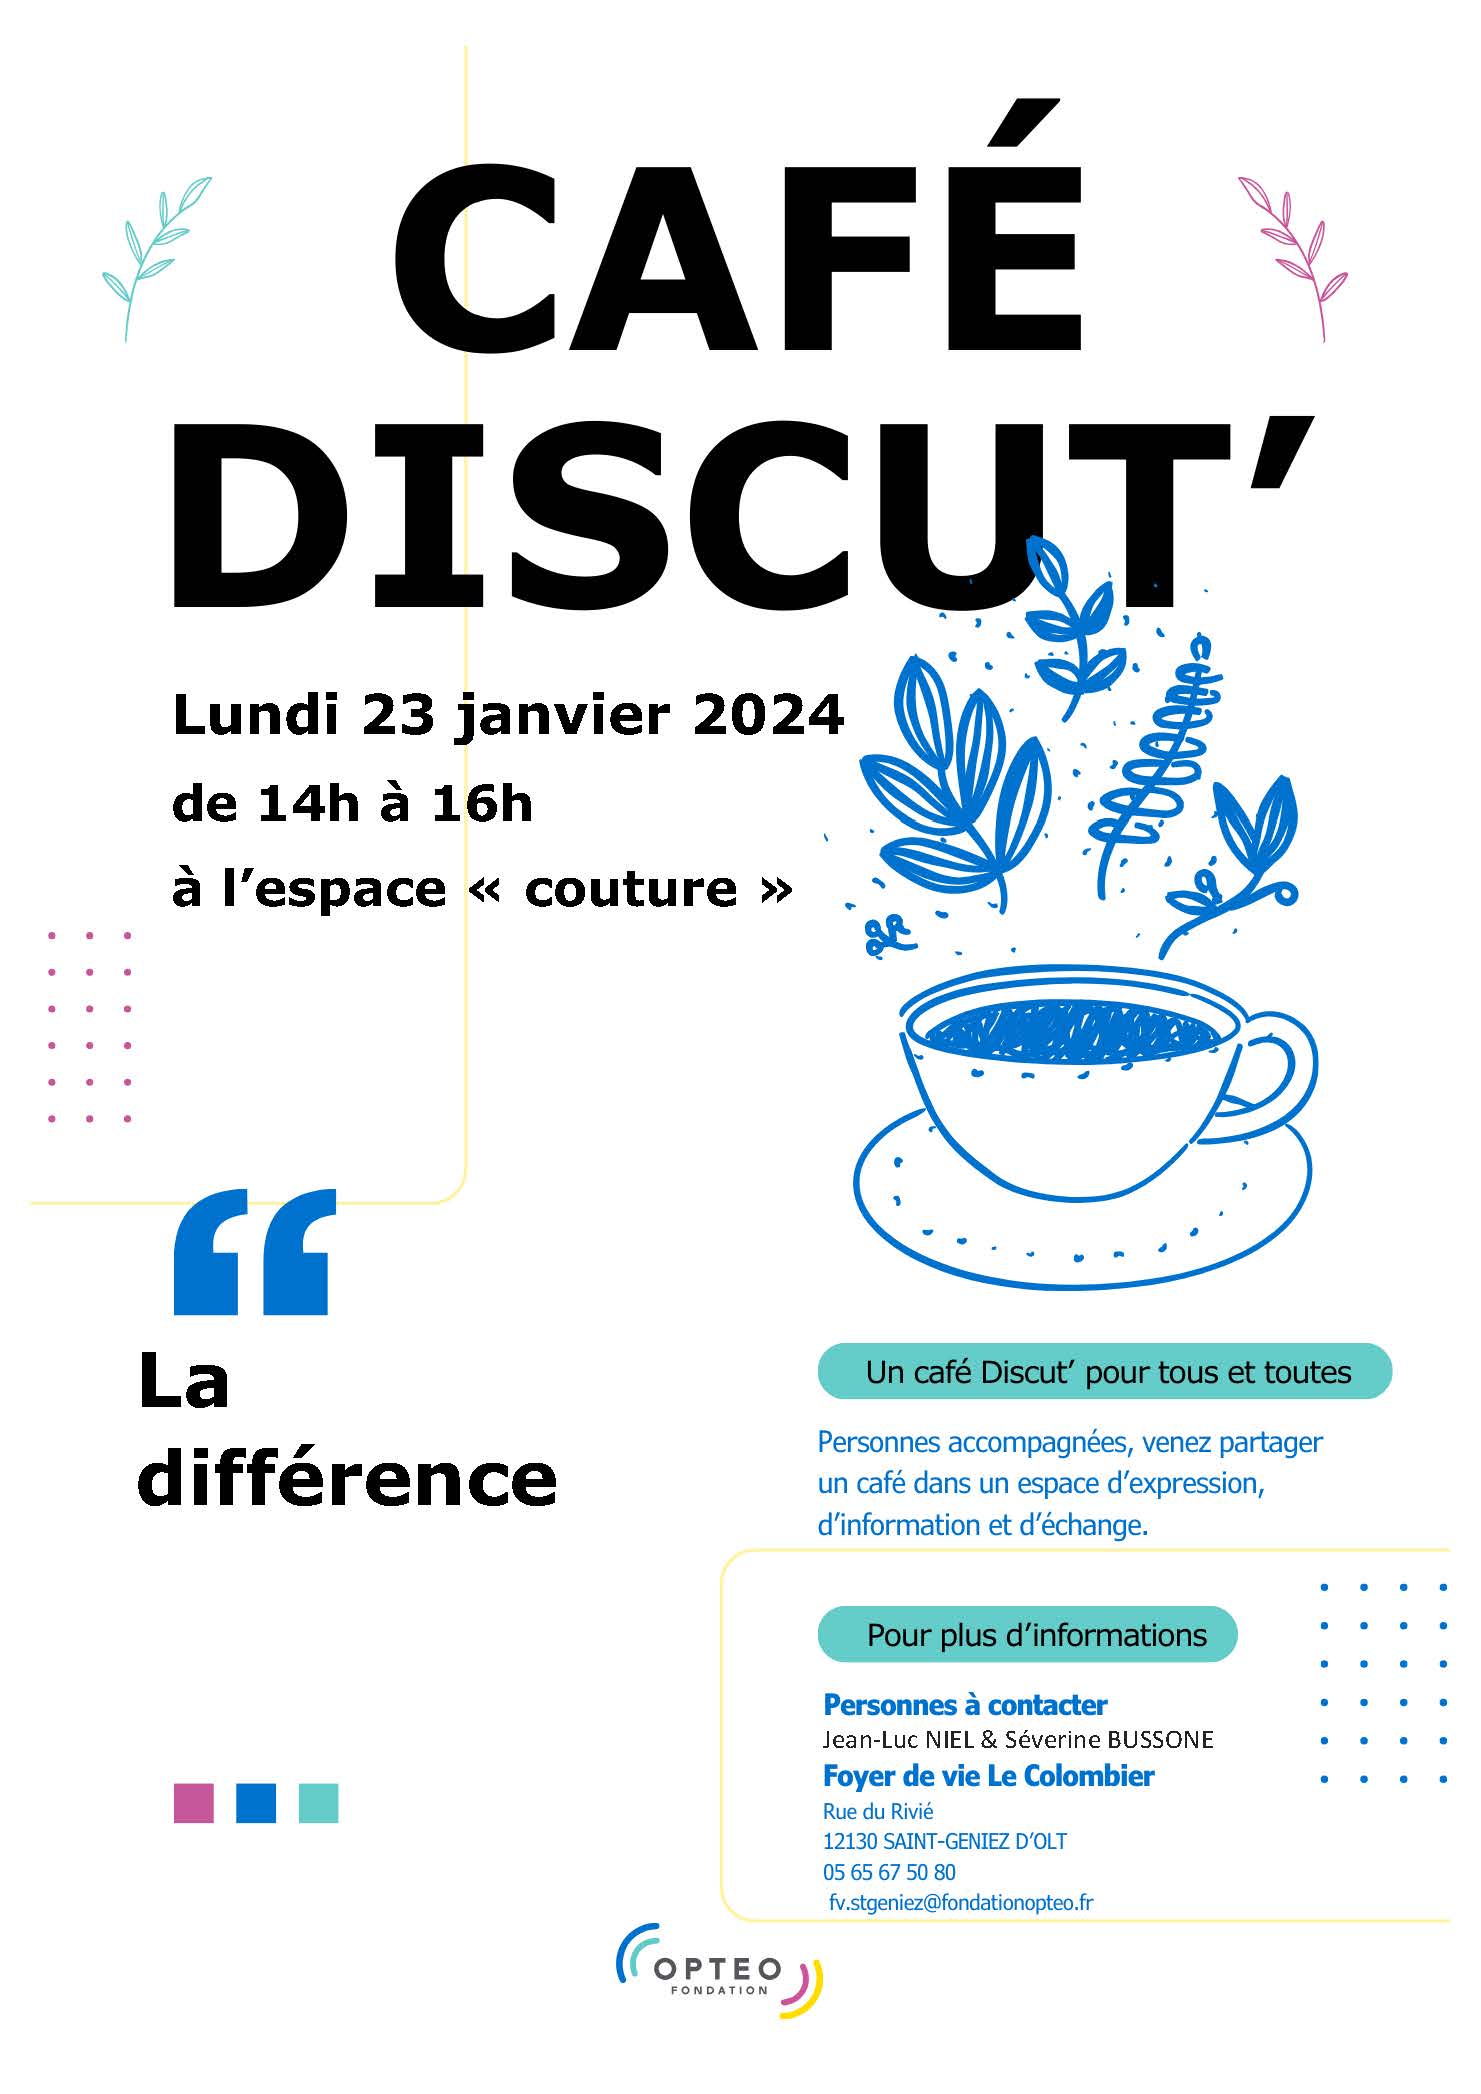 « Café Discut’ » au Foyer de vie Le Colombier à Saint-Geniez-d’Olt